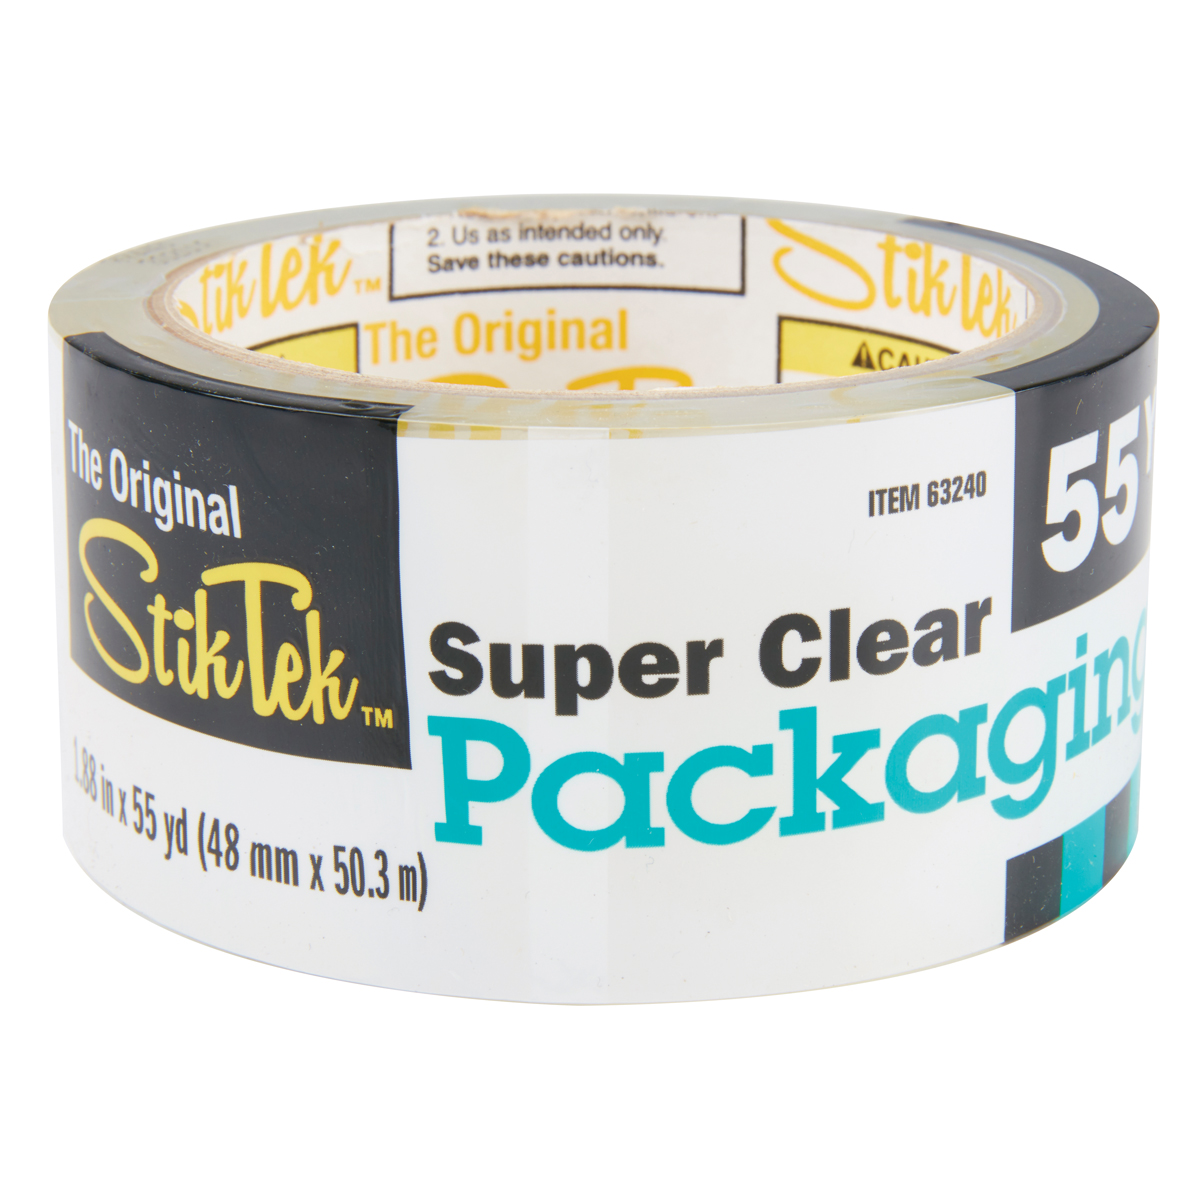 STIKTEK 1.88 in. x 55 Yards Clear Packaging Tape - Item 63240